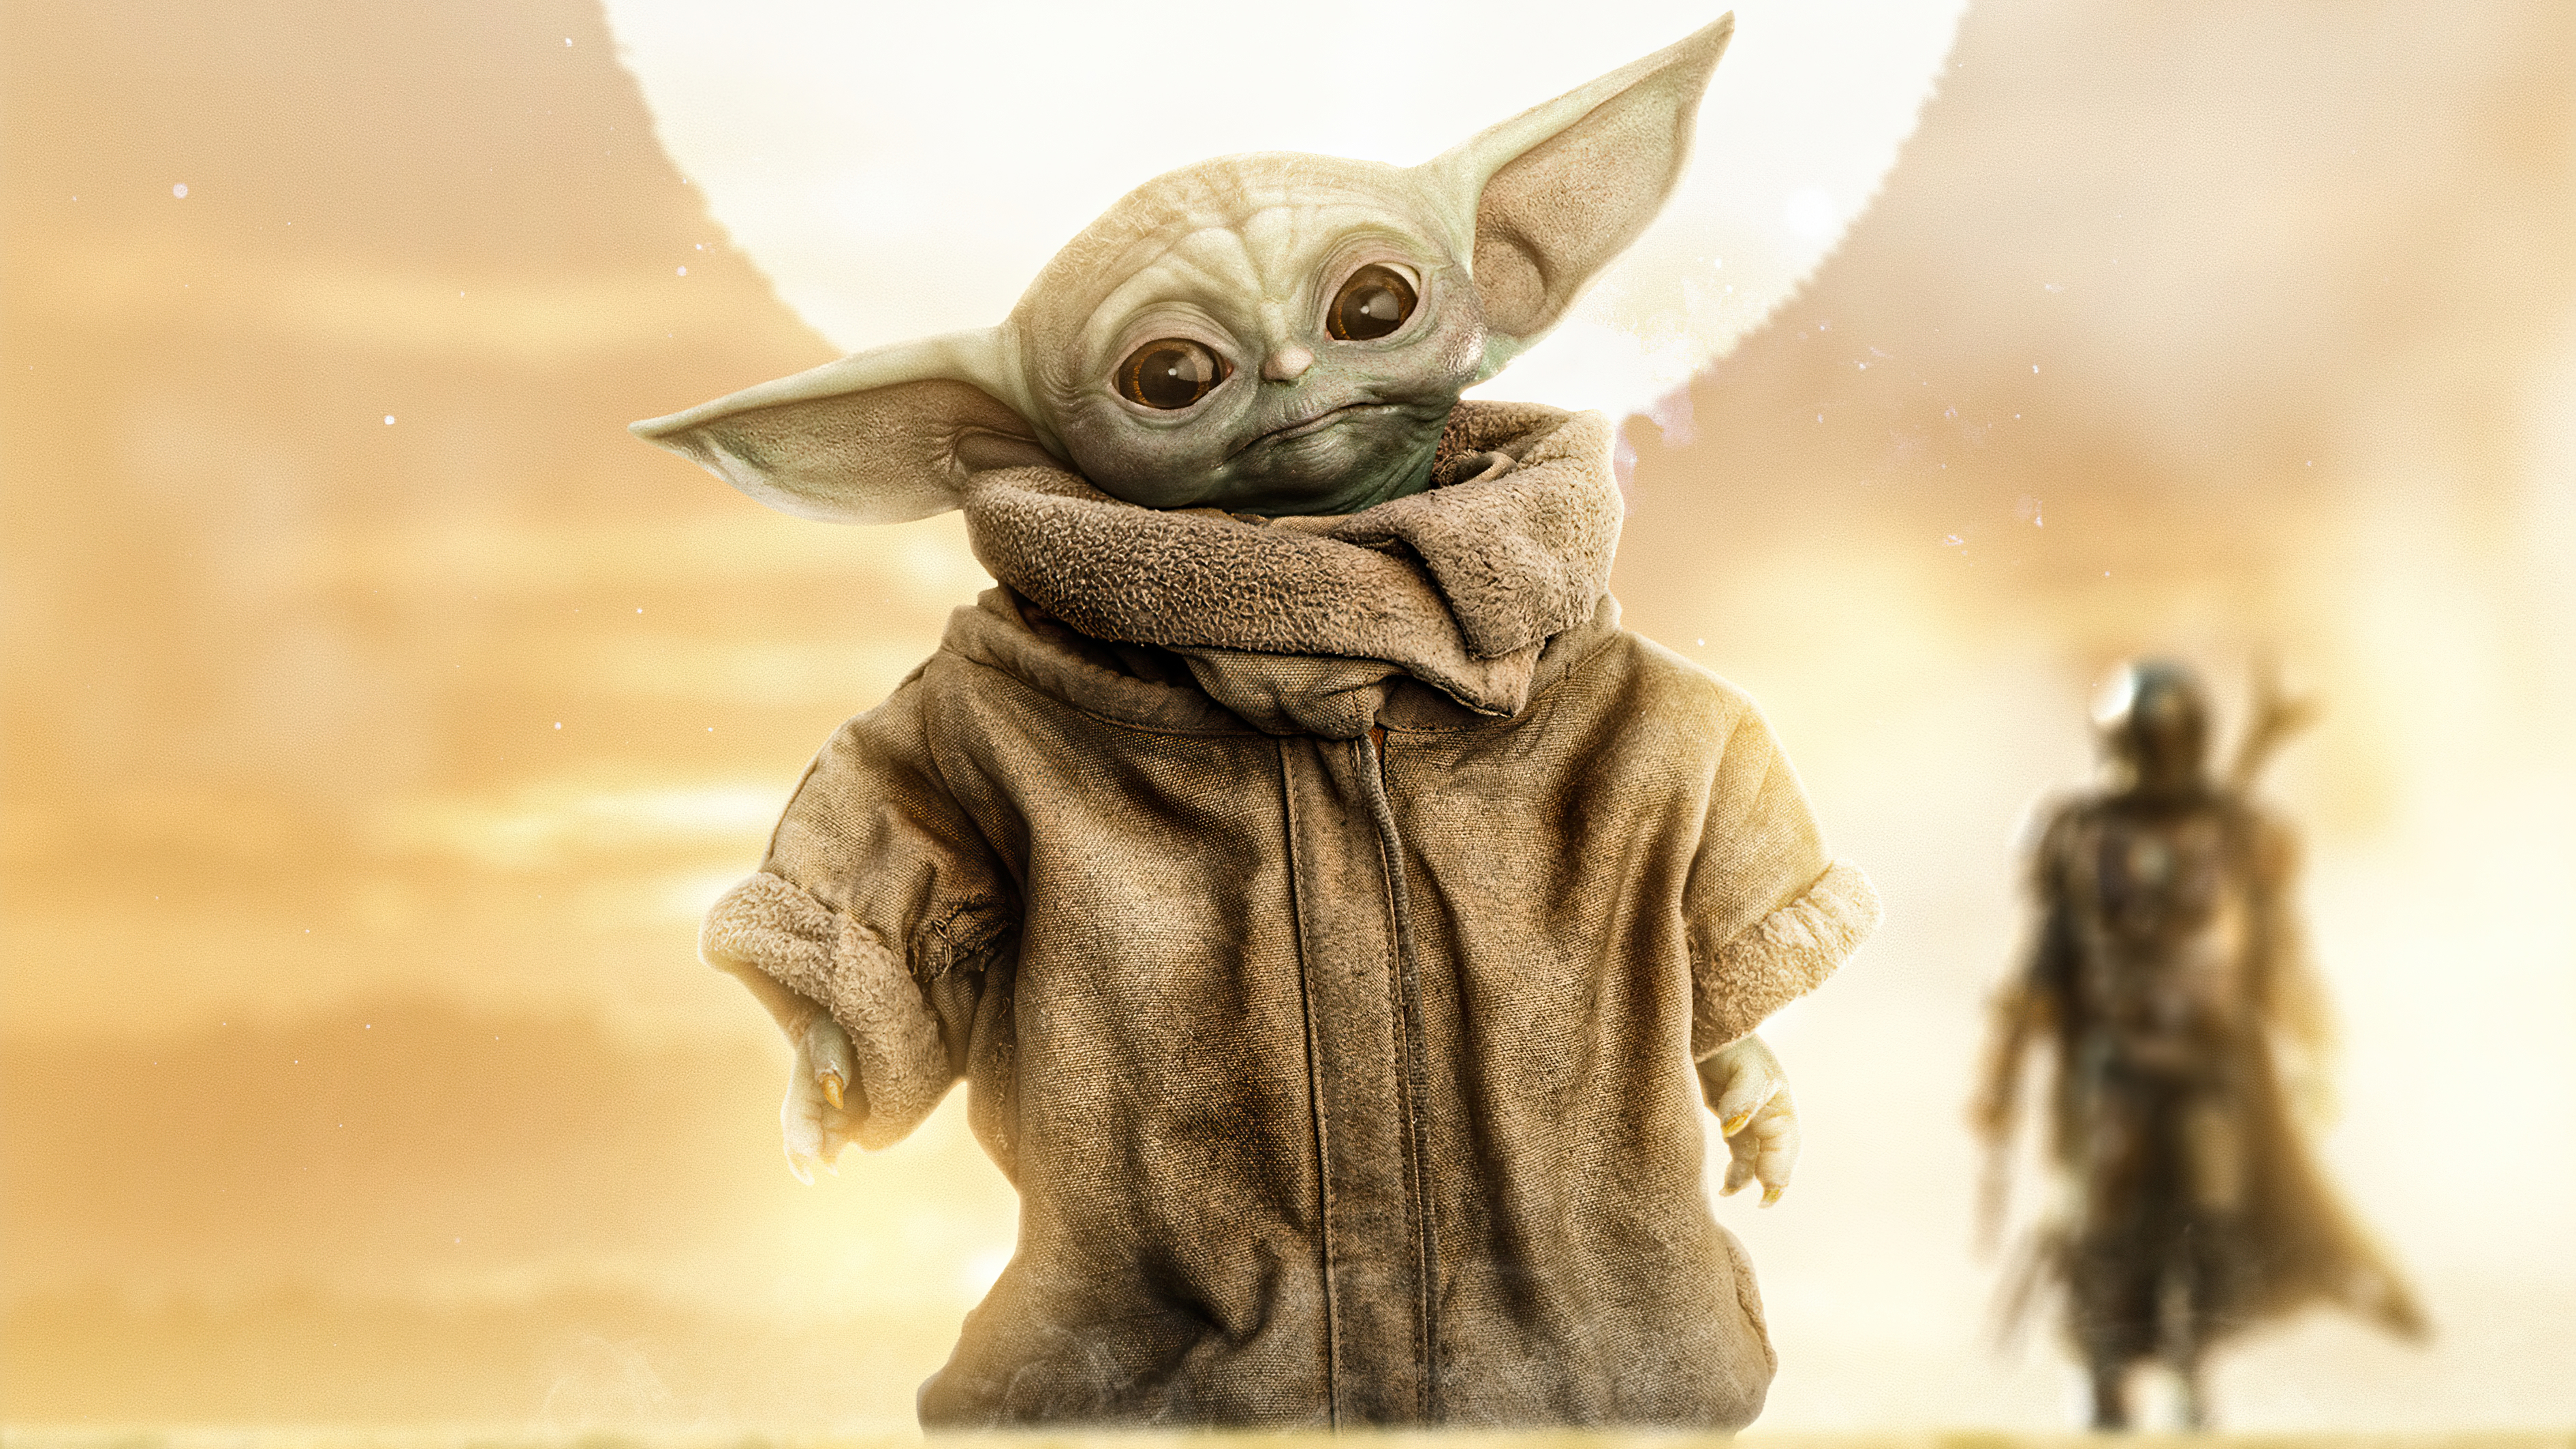 Star Wars Mandalorian And Baby Yoda Wallpapers